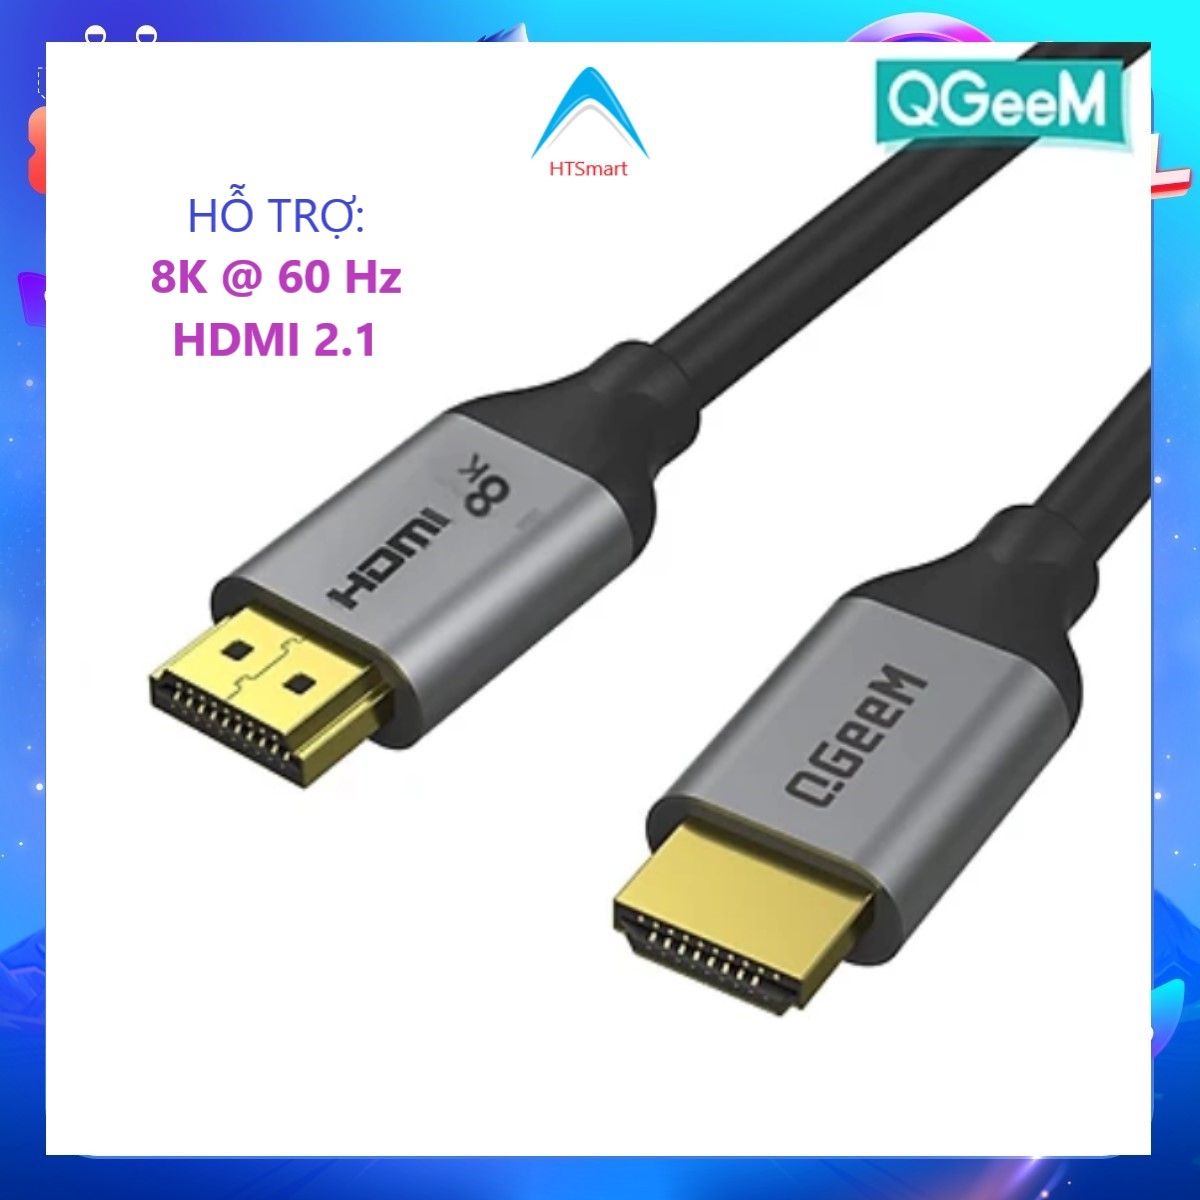 Cáp HDMI sang HDMI 2.1 8K QGeeM hợp kim nhôm - Hàng Chính Hãng - 0.91m